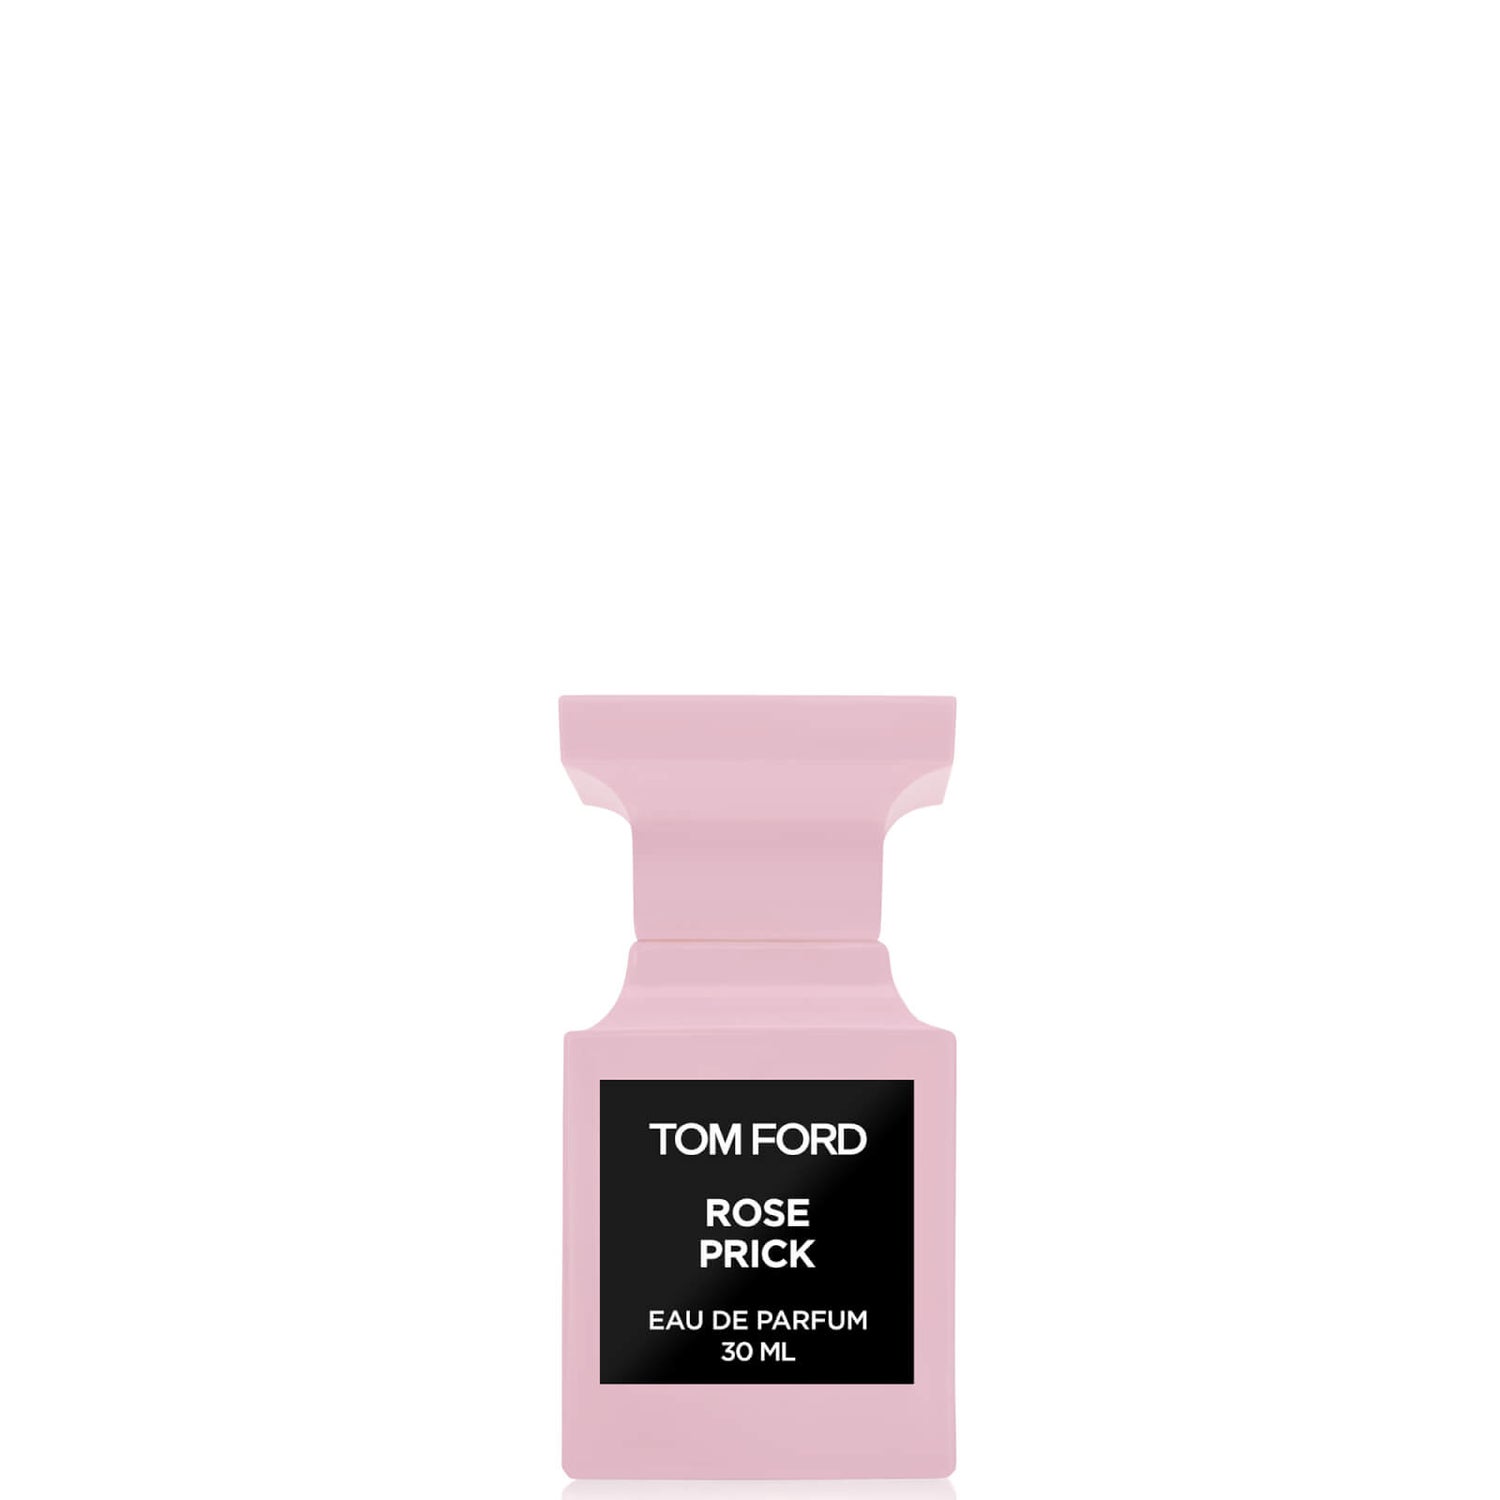 Tom Ford Rose Prick Eau de Parfum Spray 30ml